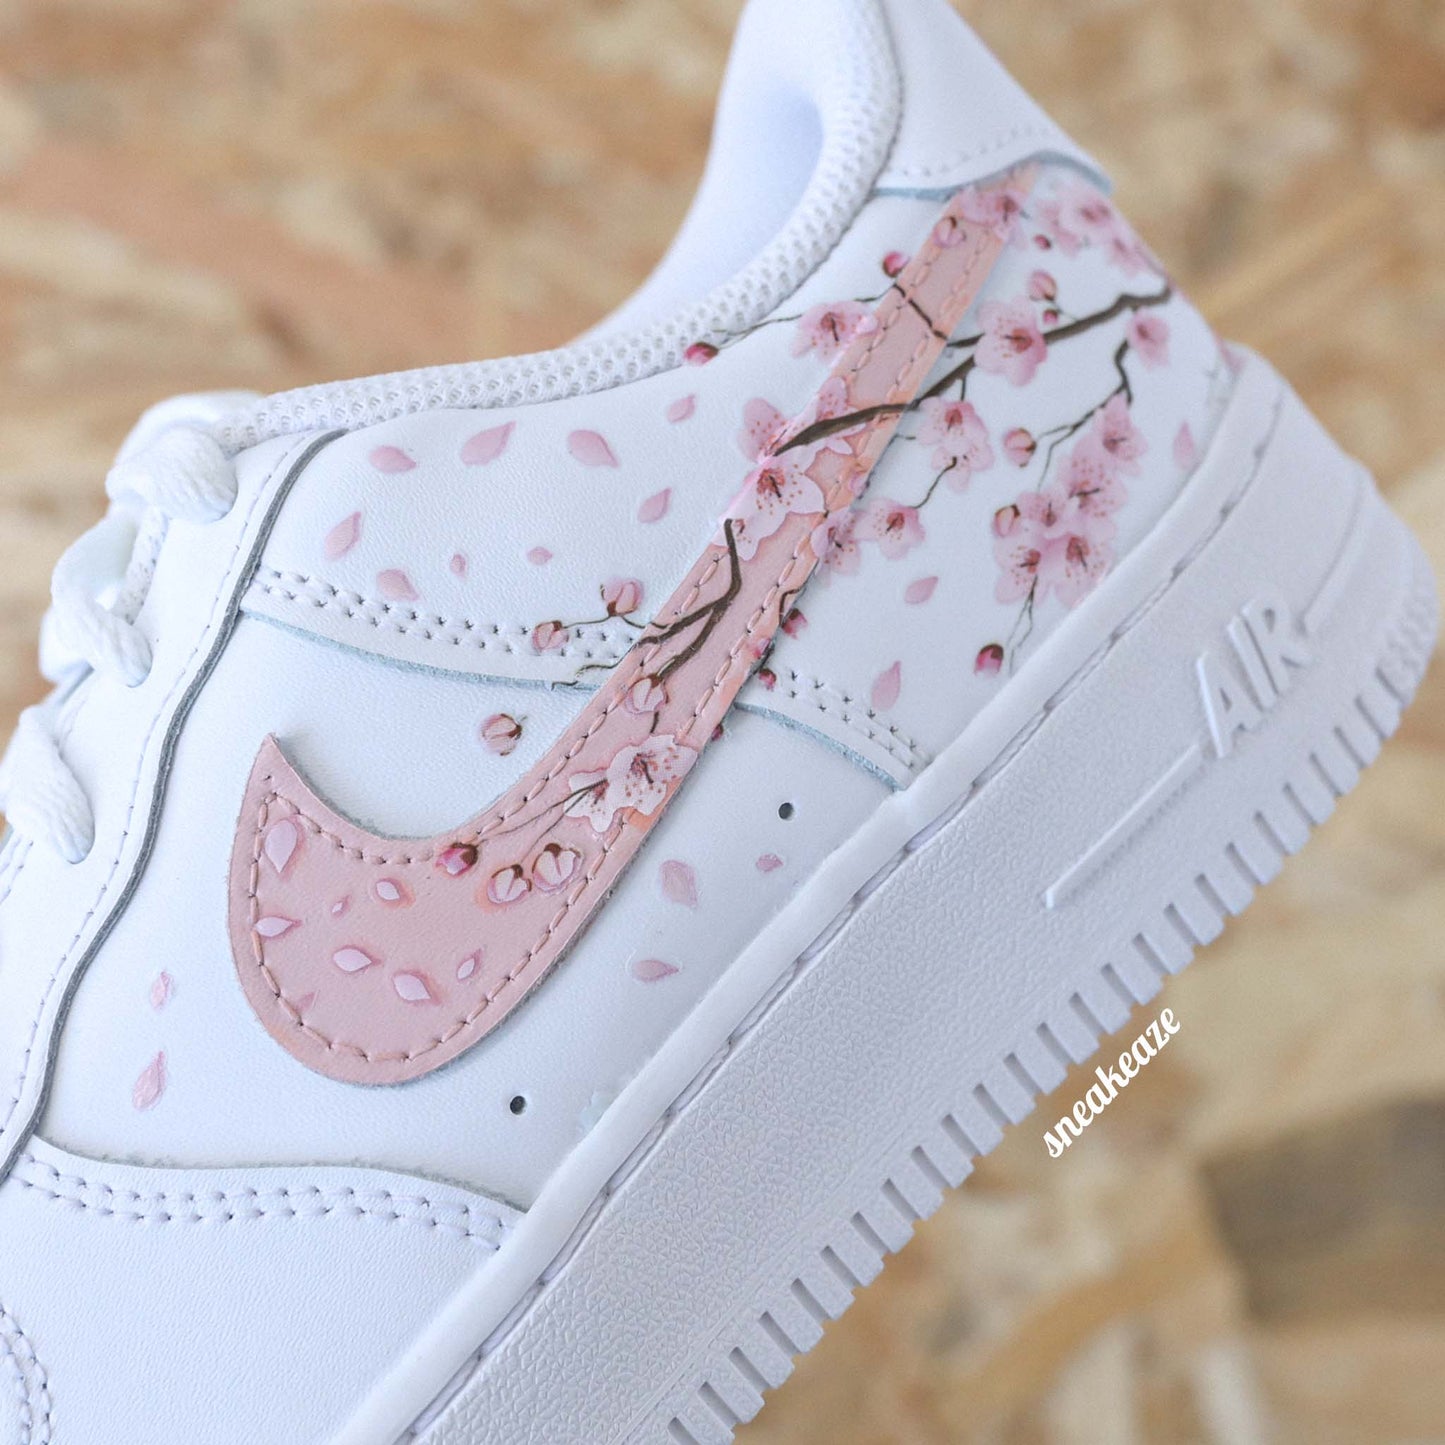 nike air force 1 custom sakura cherry blossom pastel sneakers af1 sneakeaze